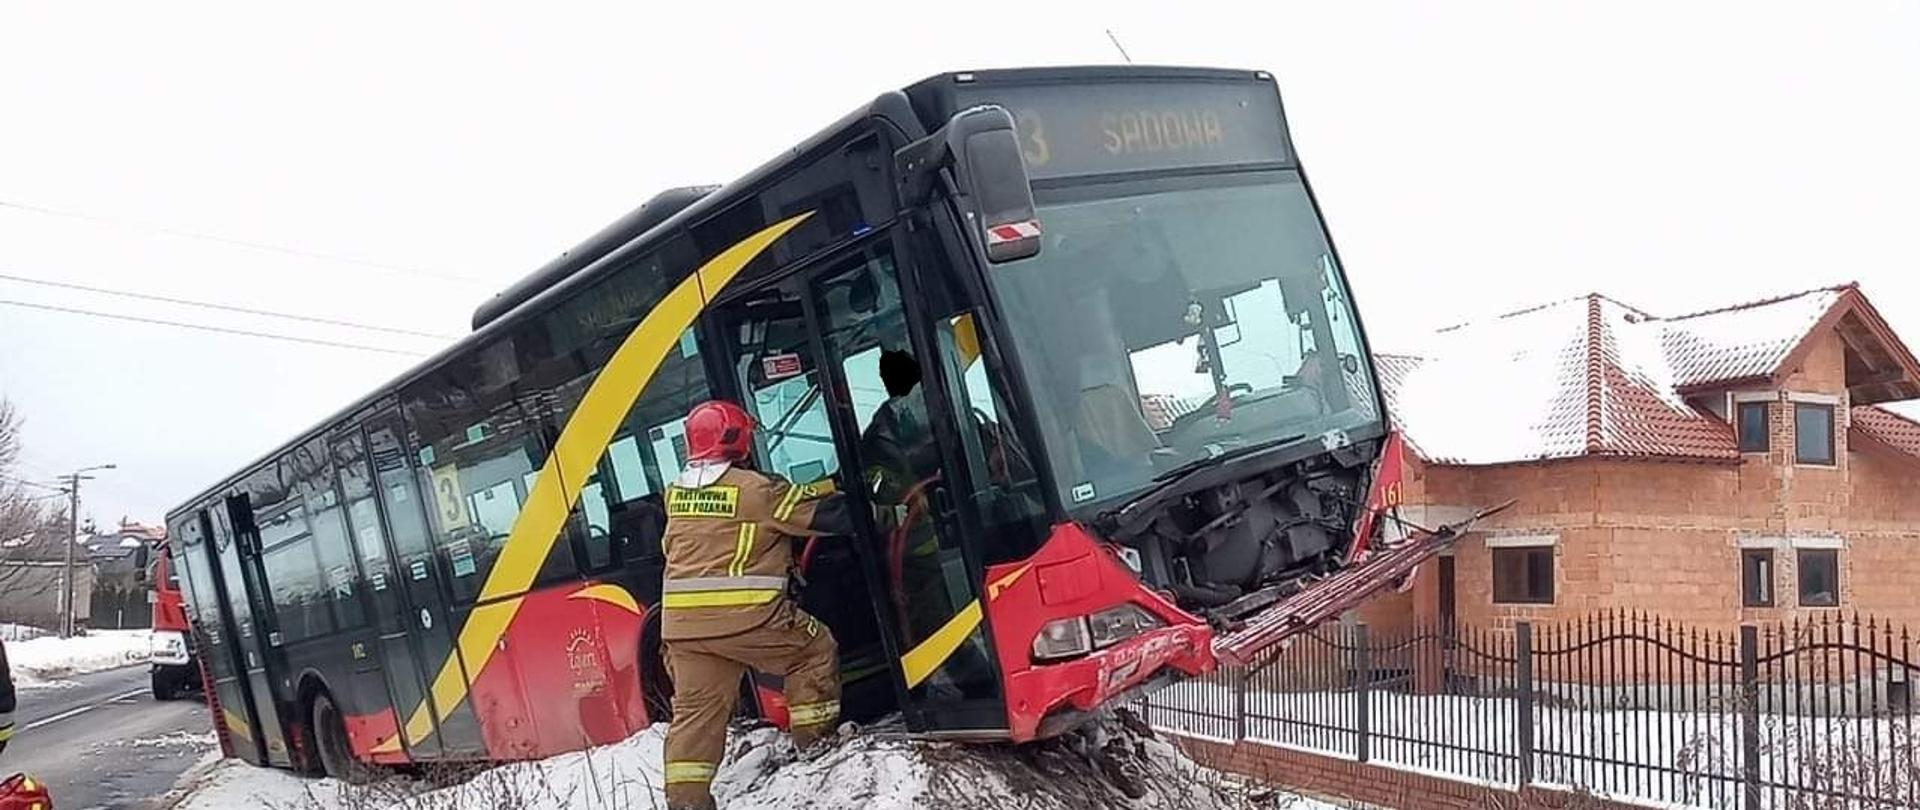 Na zdjęciu widać autobus który wypadł z drogi i wjechał na górę piachy na poboczu. Przy autobusie widać strażaka który pomaga wysiąść podróżującym.